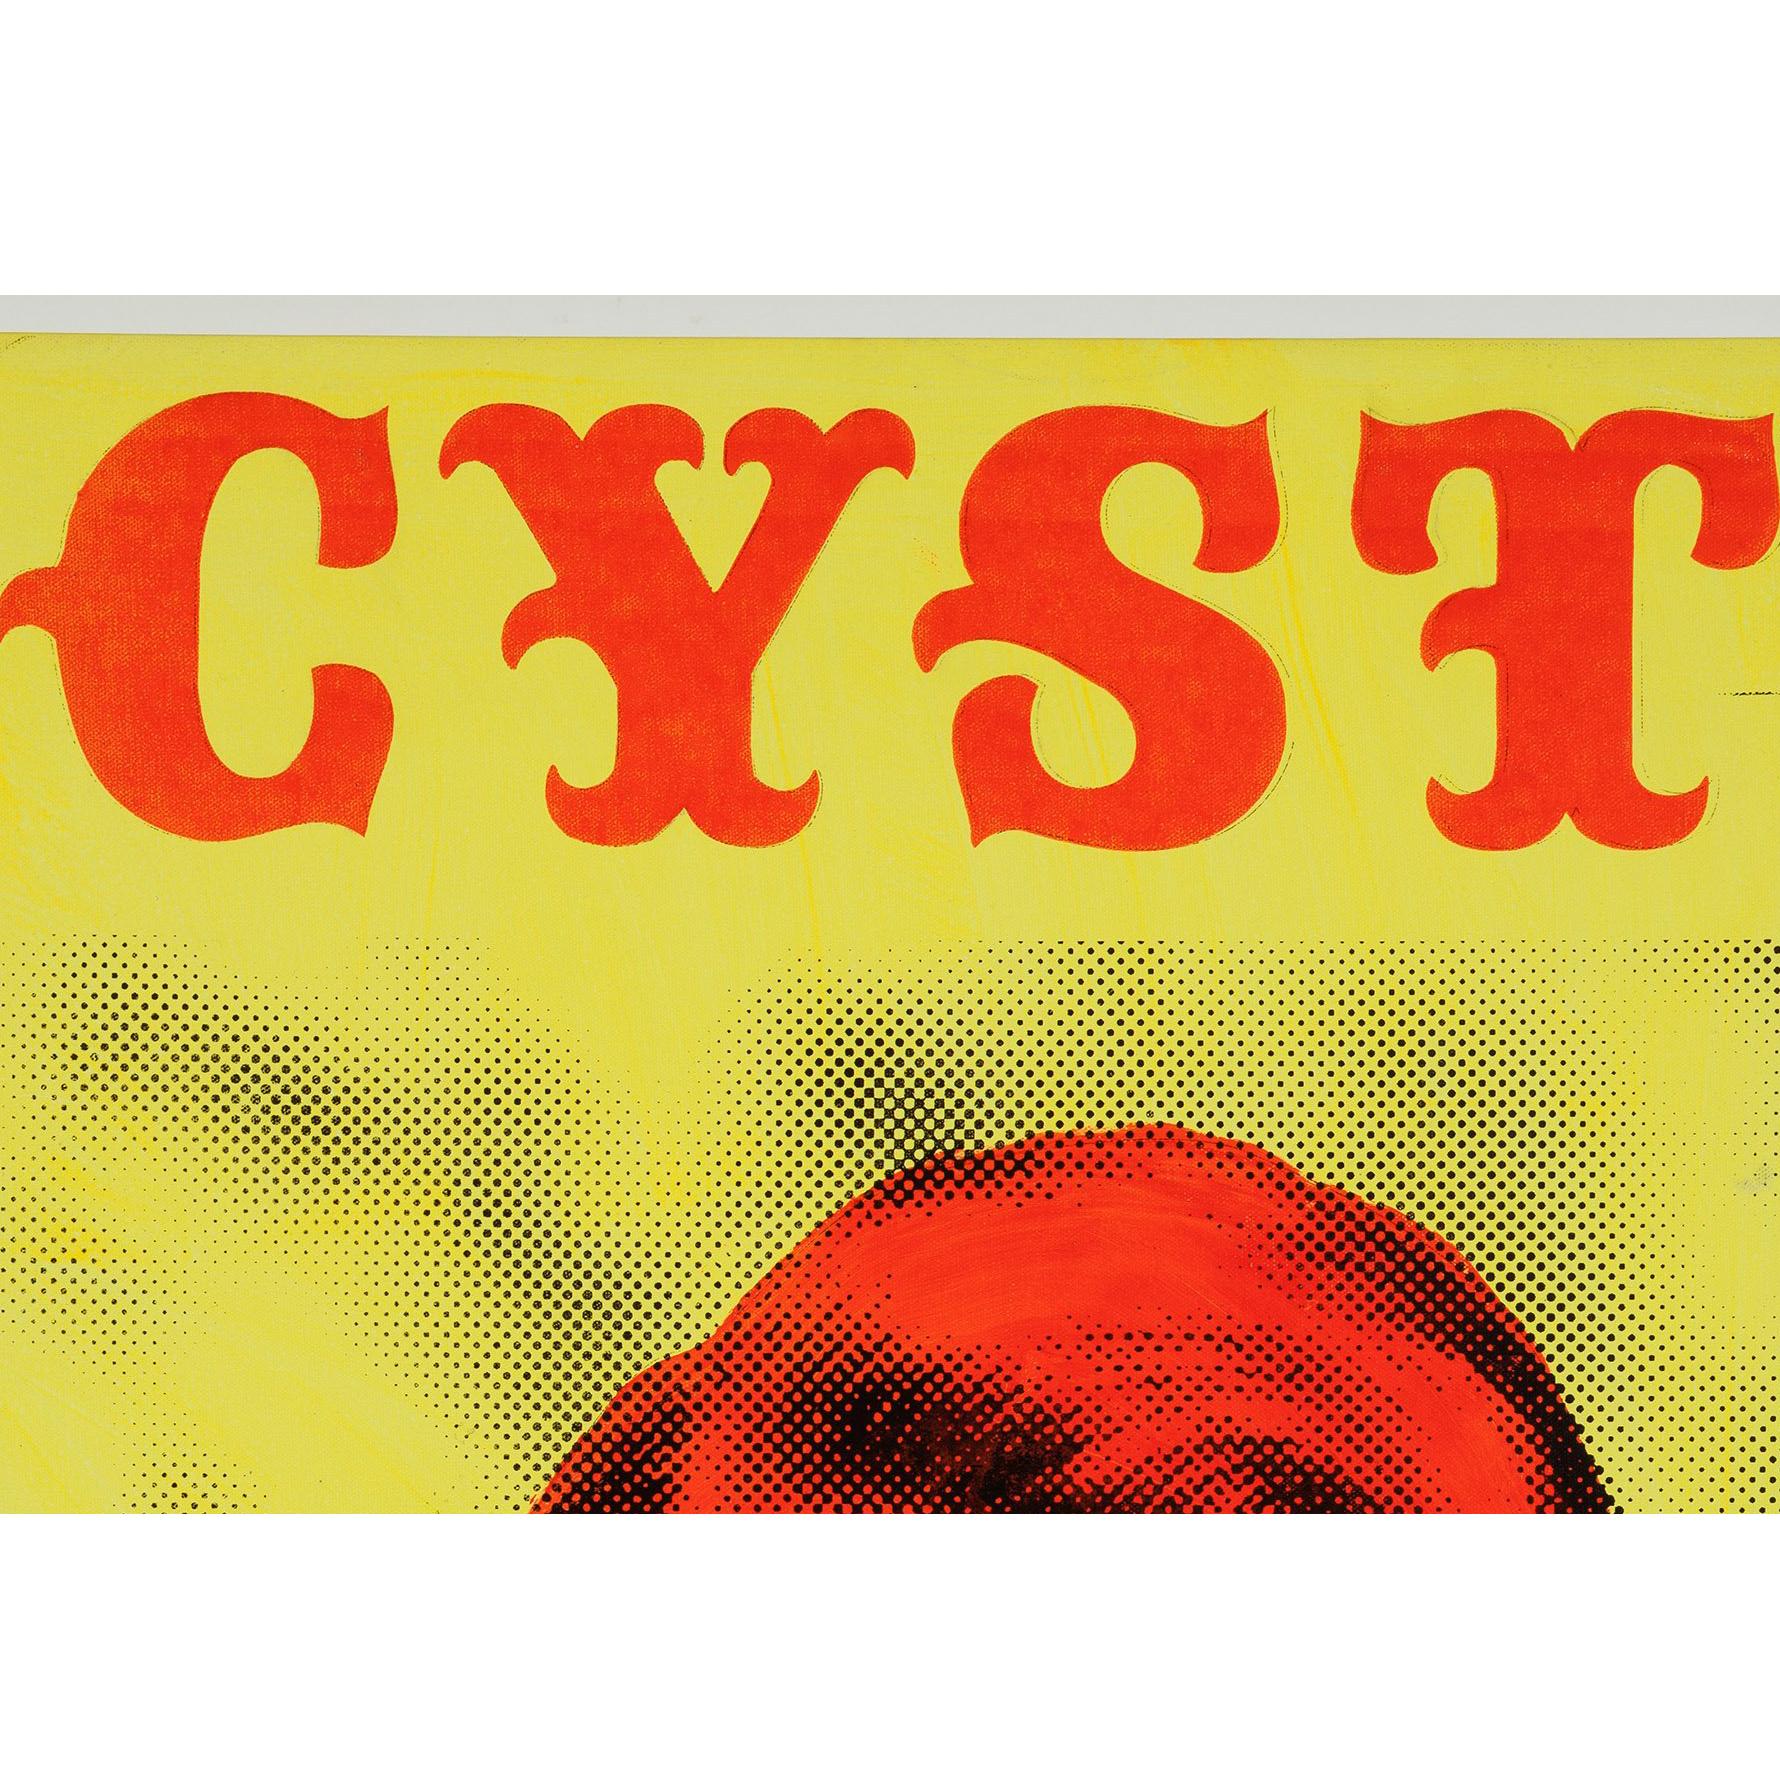 Cyst - Contemporary Mixed Media Art by Skylar Fein